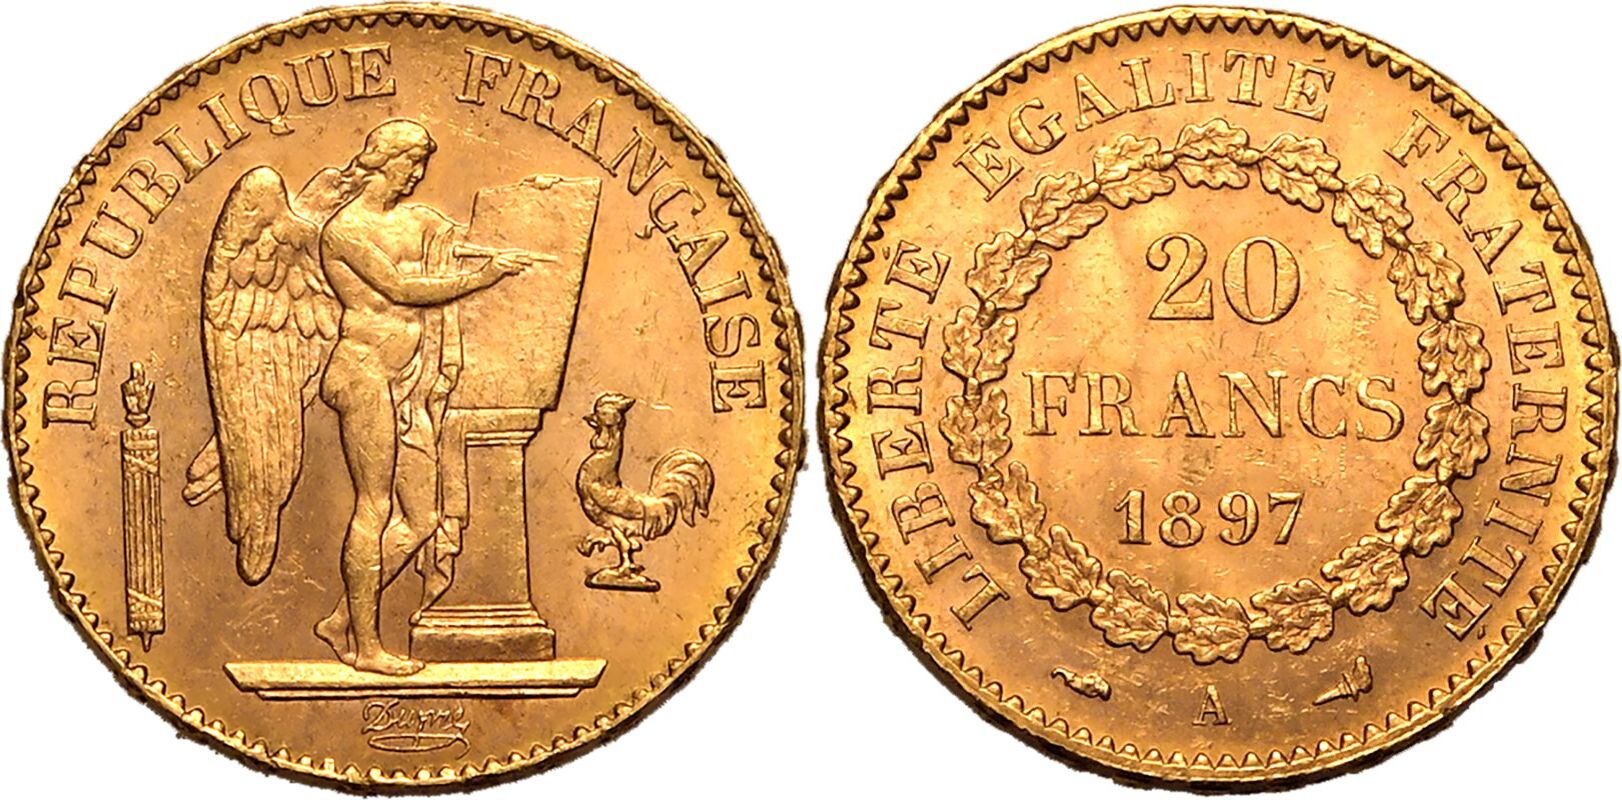 France Third Republic 1897 A Gold 20 Francs